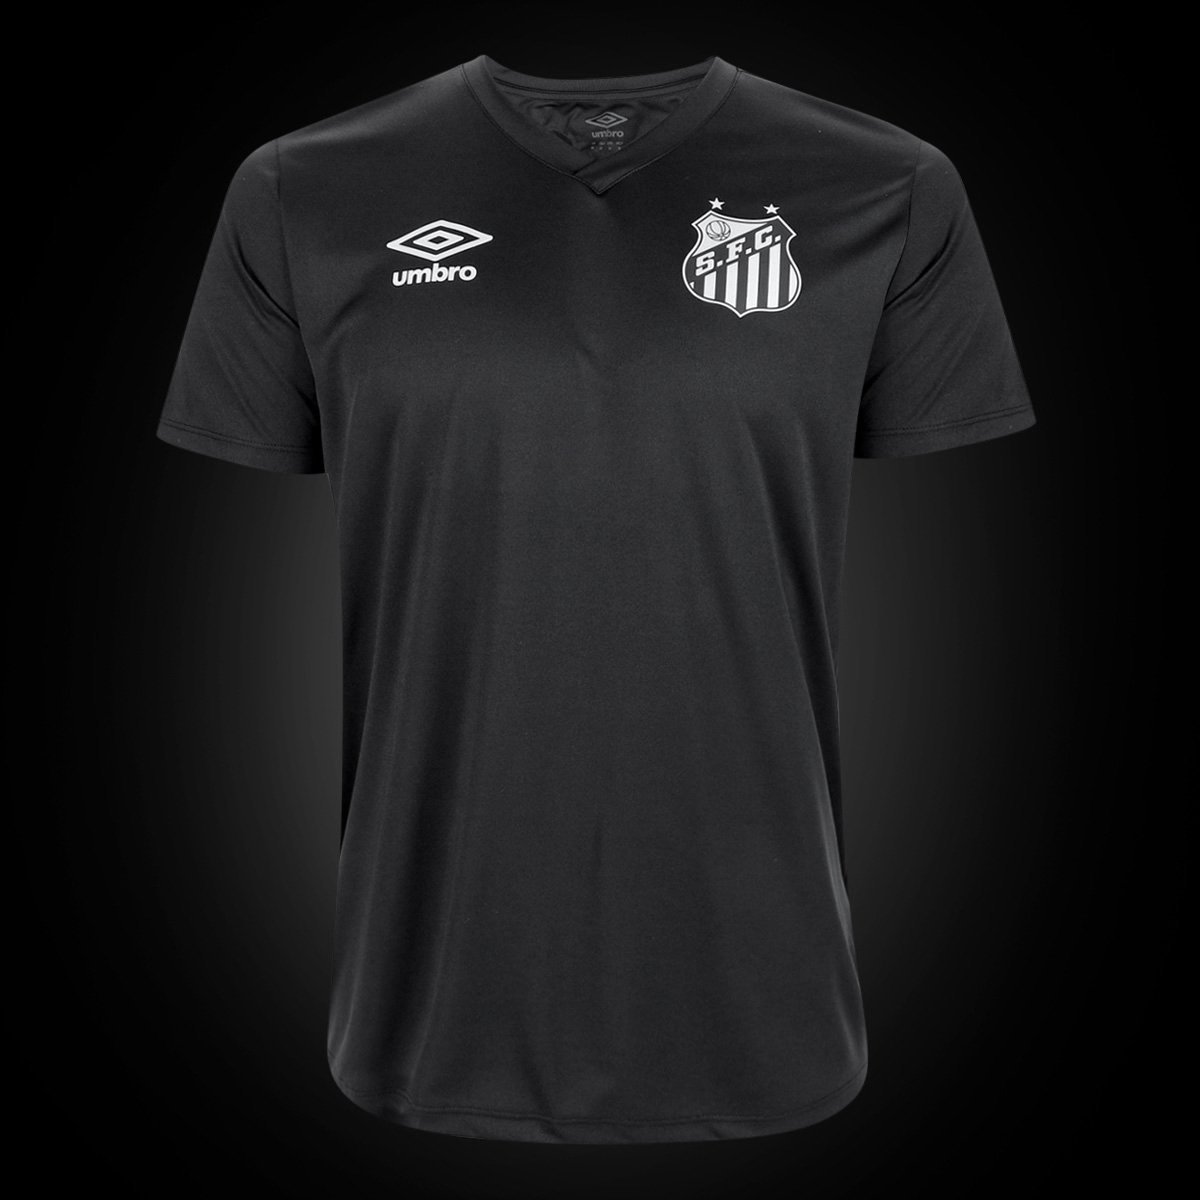 Camisa Santos Umbro Black Edição Limitada 21/22 s/n Torcedor - Masculina Tam P